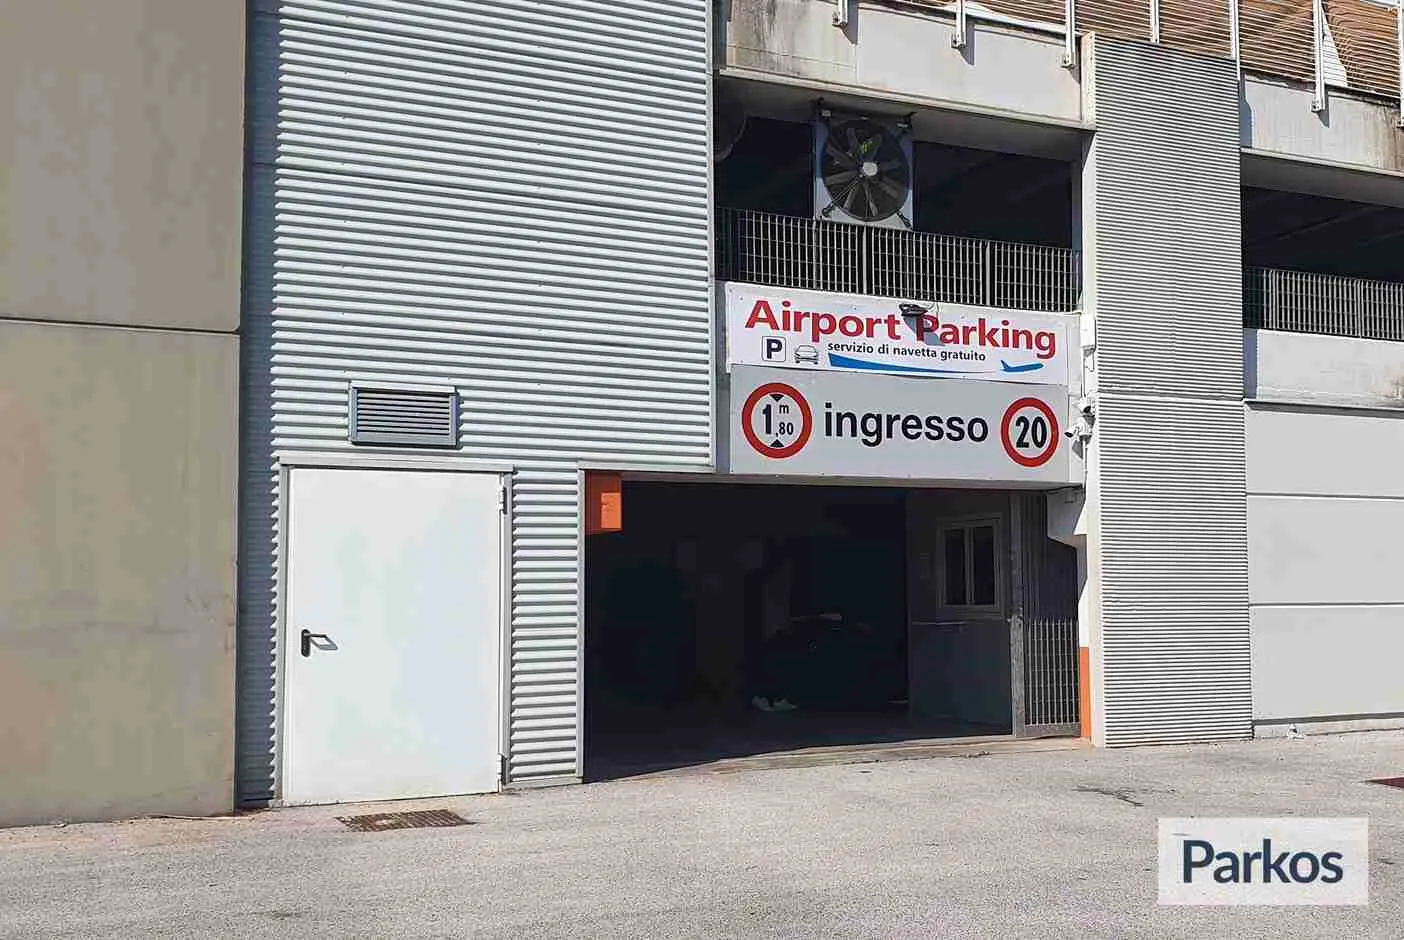 Airport Parking Bari (Paga online) - Parcheggio Aeroporto Bari - picture 1